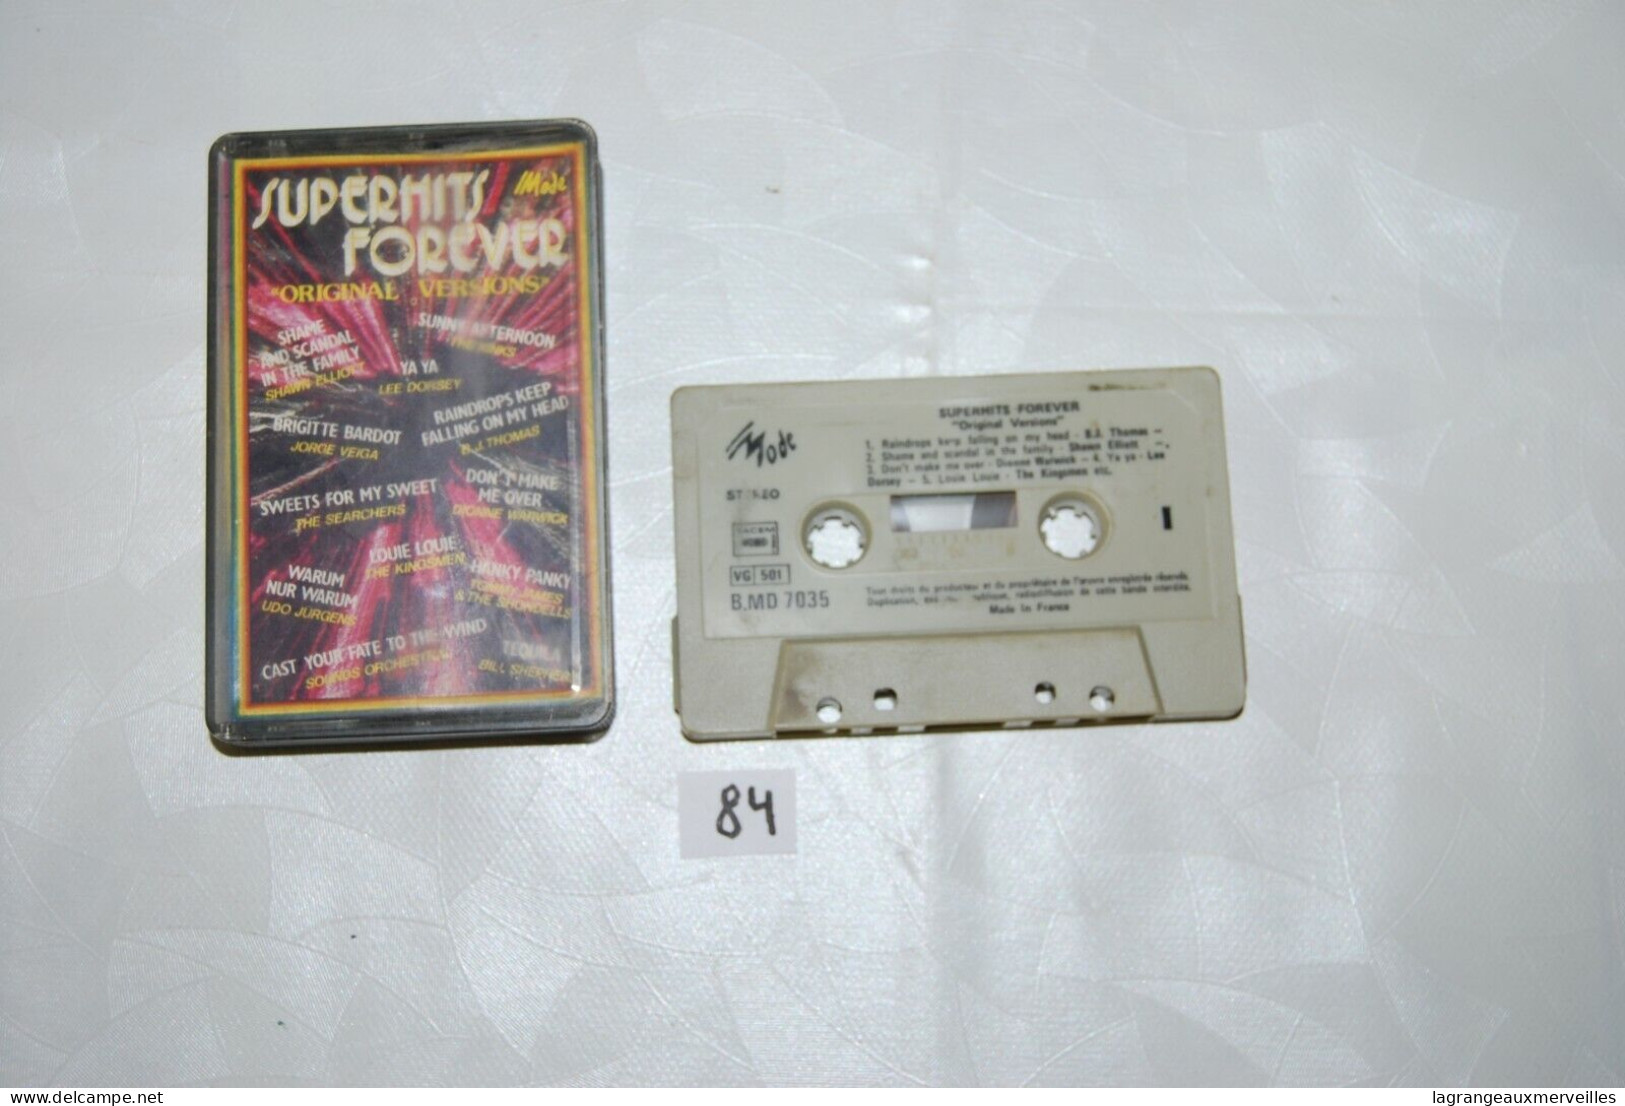 C84 K7 Cassette Audio - Super Hits Forever - Cassettes Beta